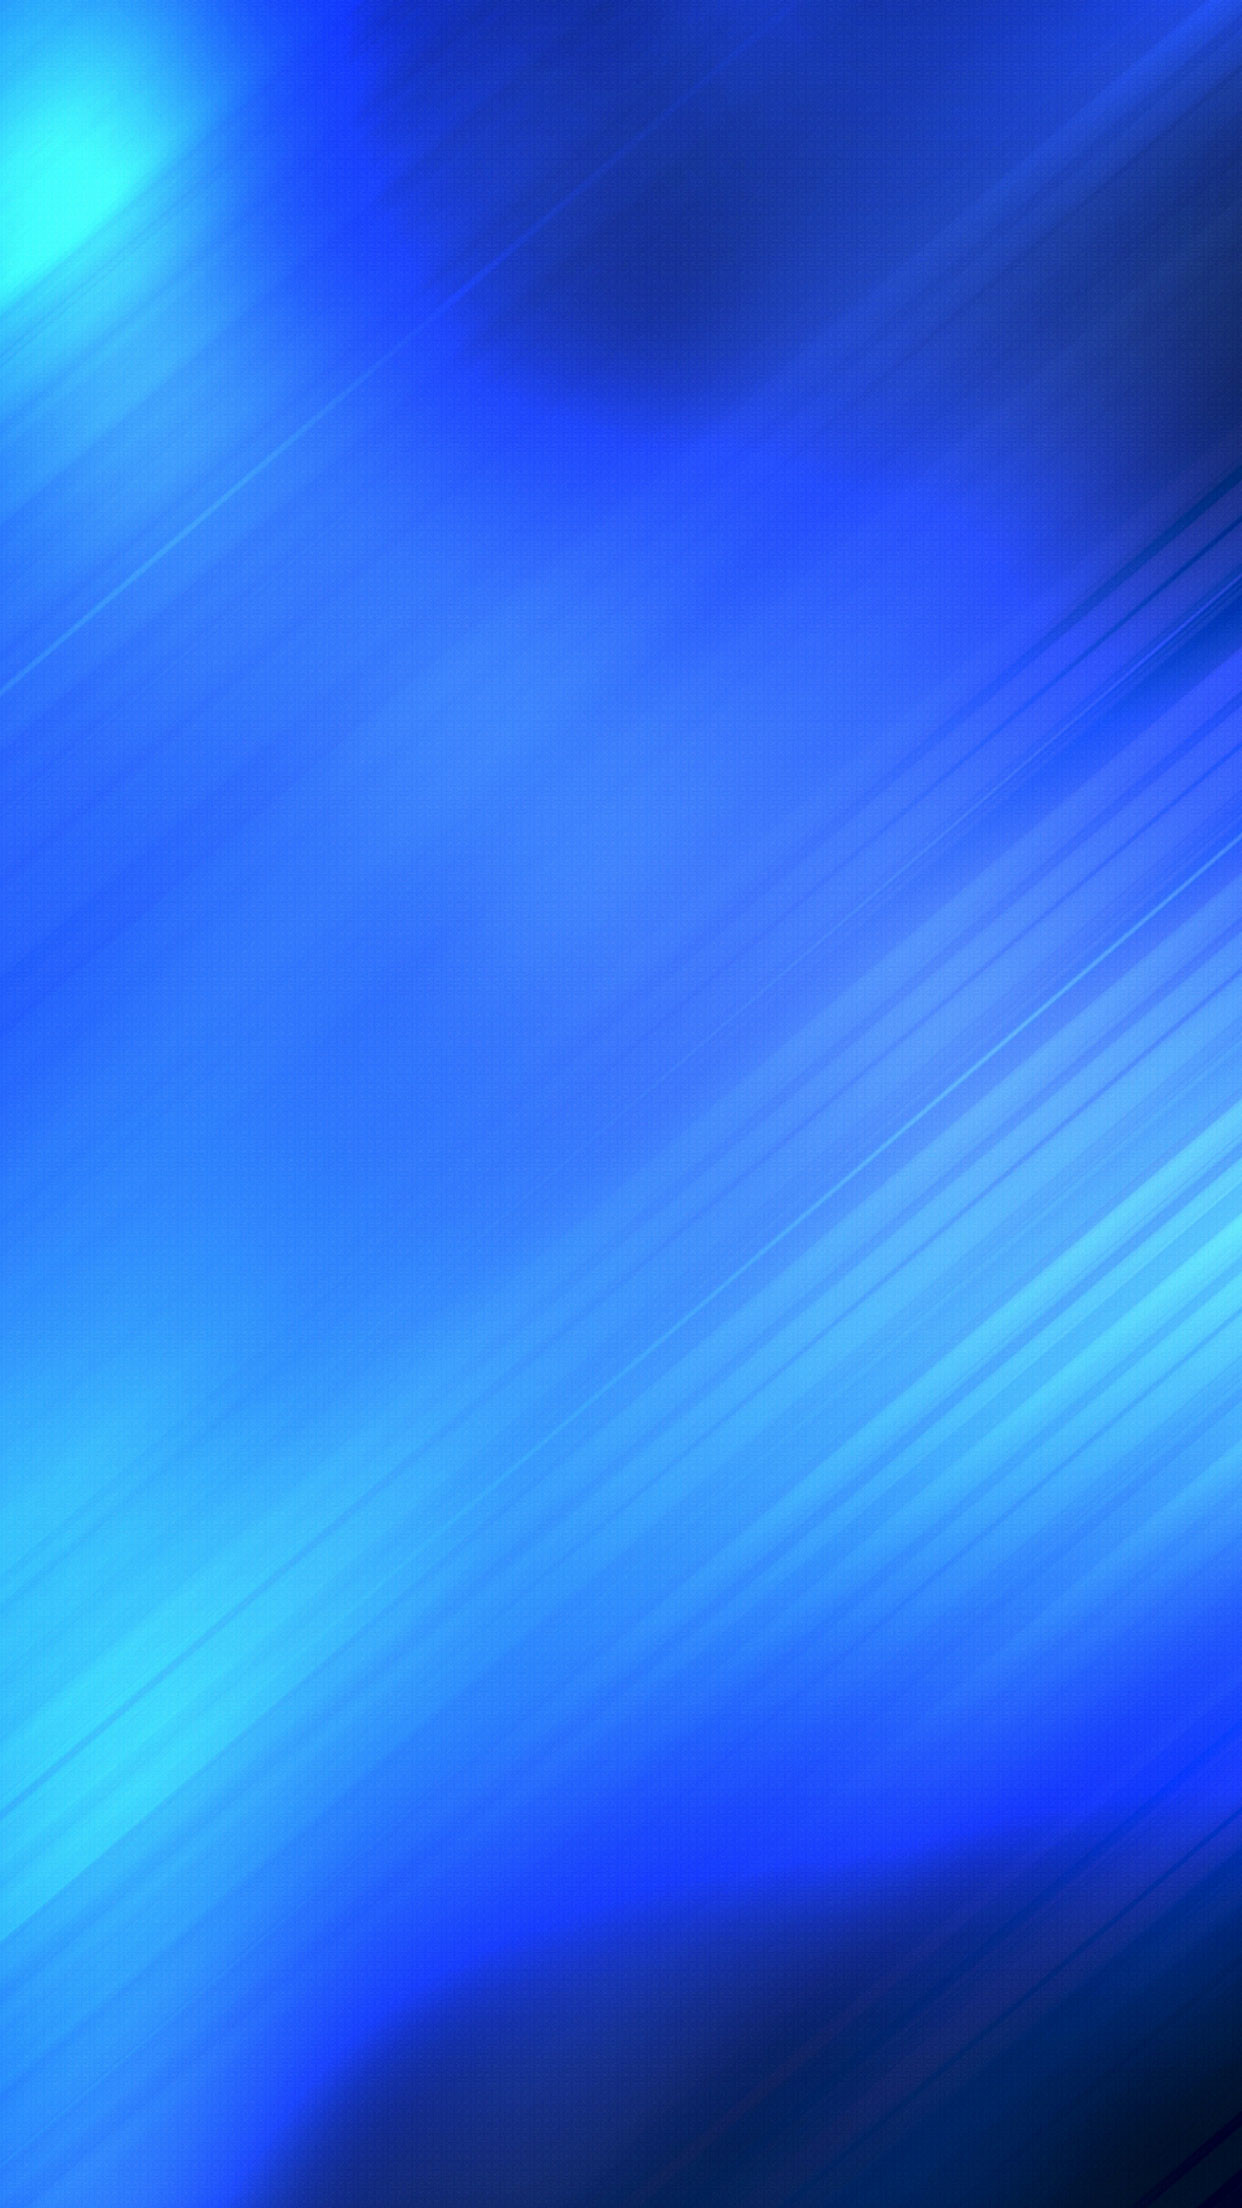 papel tapiz abstracto azul,azul,cielo,azul cobalto,azul eléctrico,tiempo de día